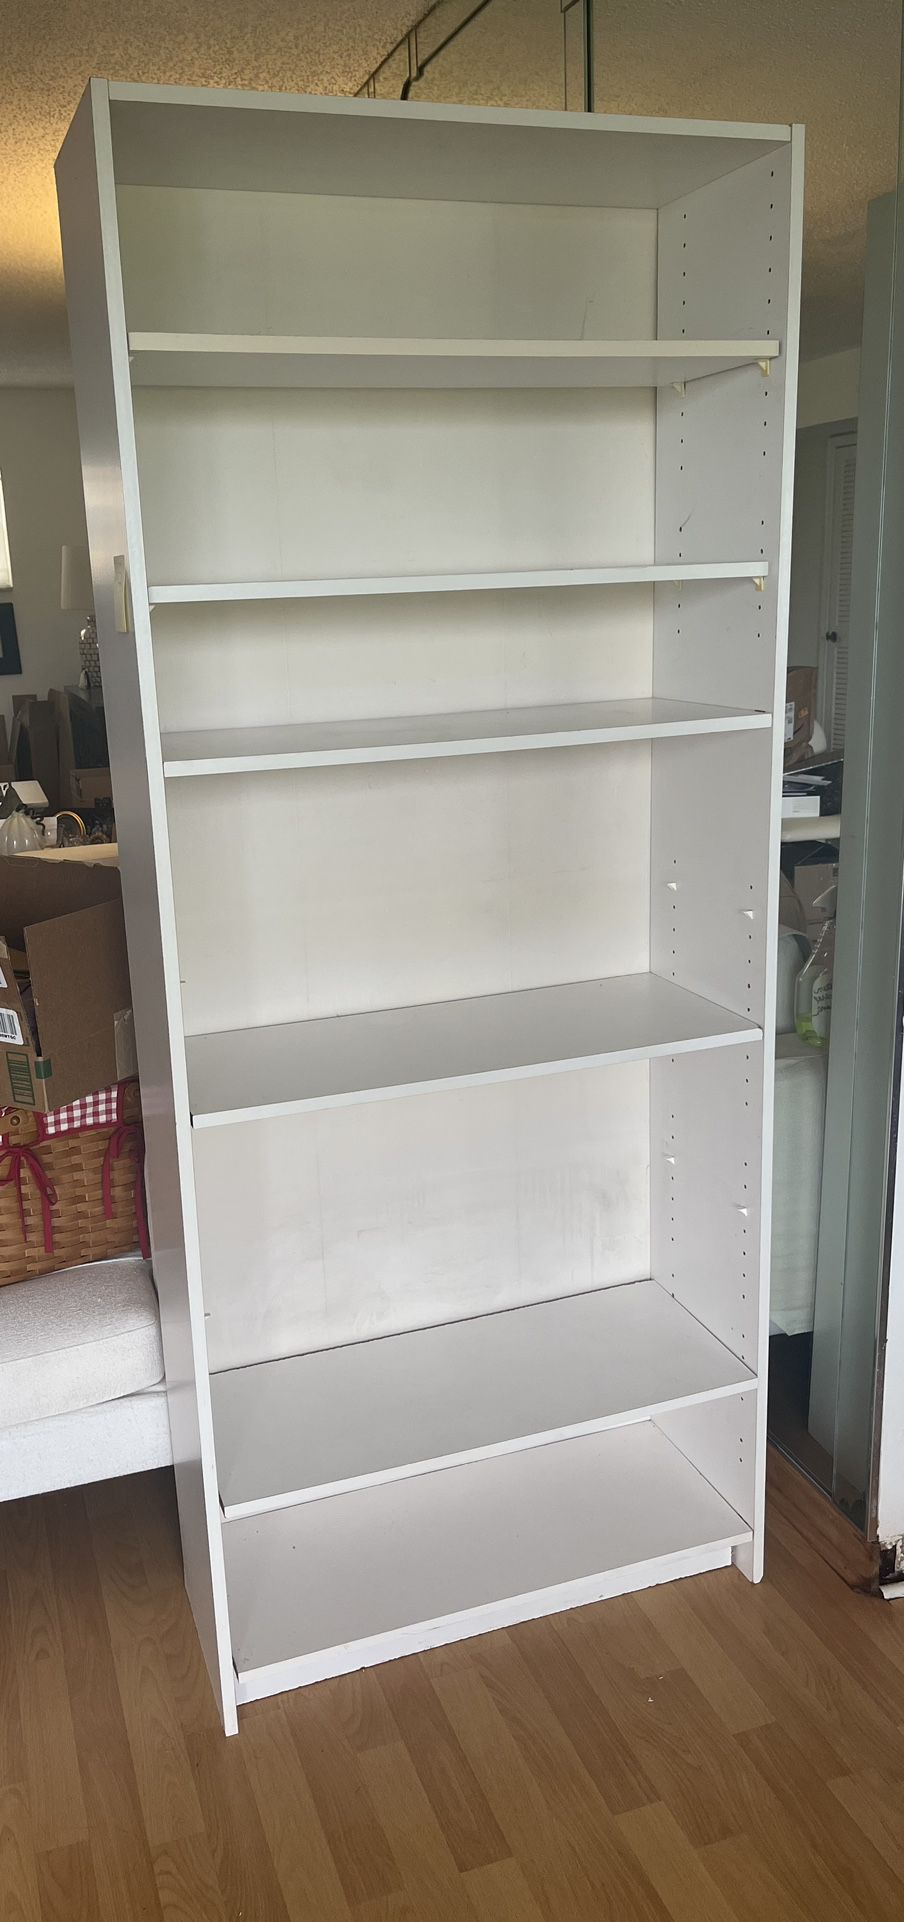 White 6 Shelf Adjustable Bookcase 